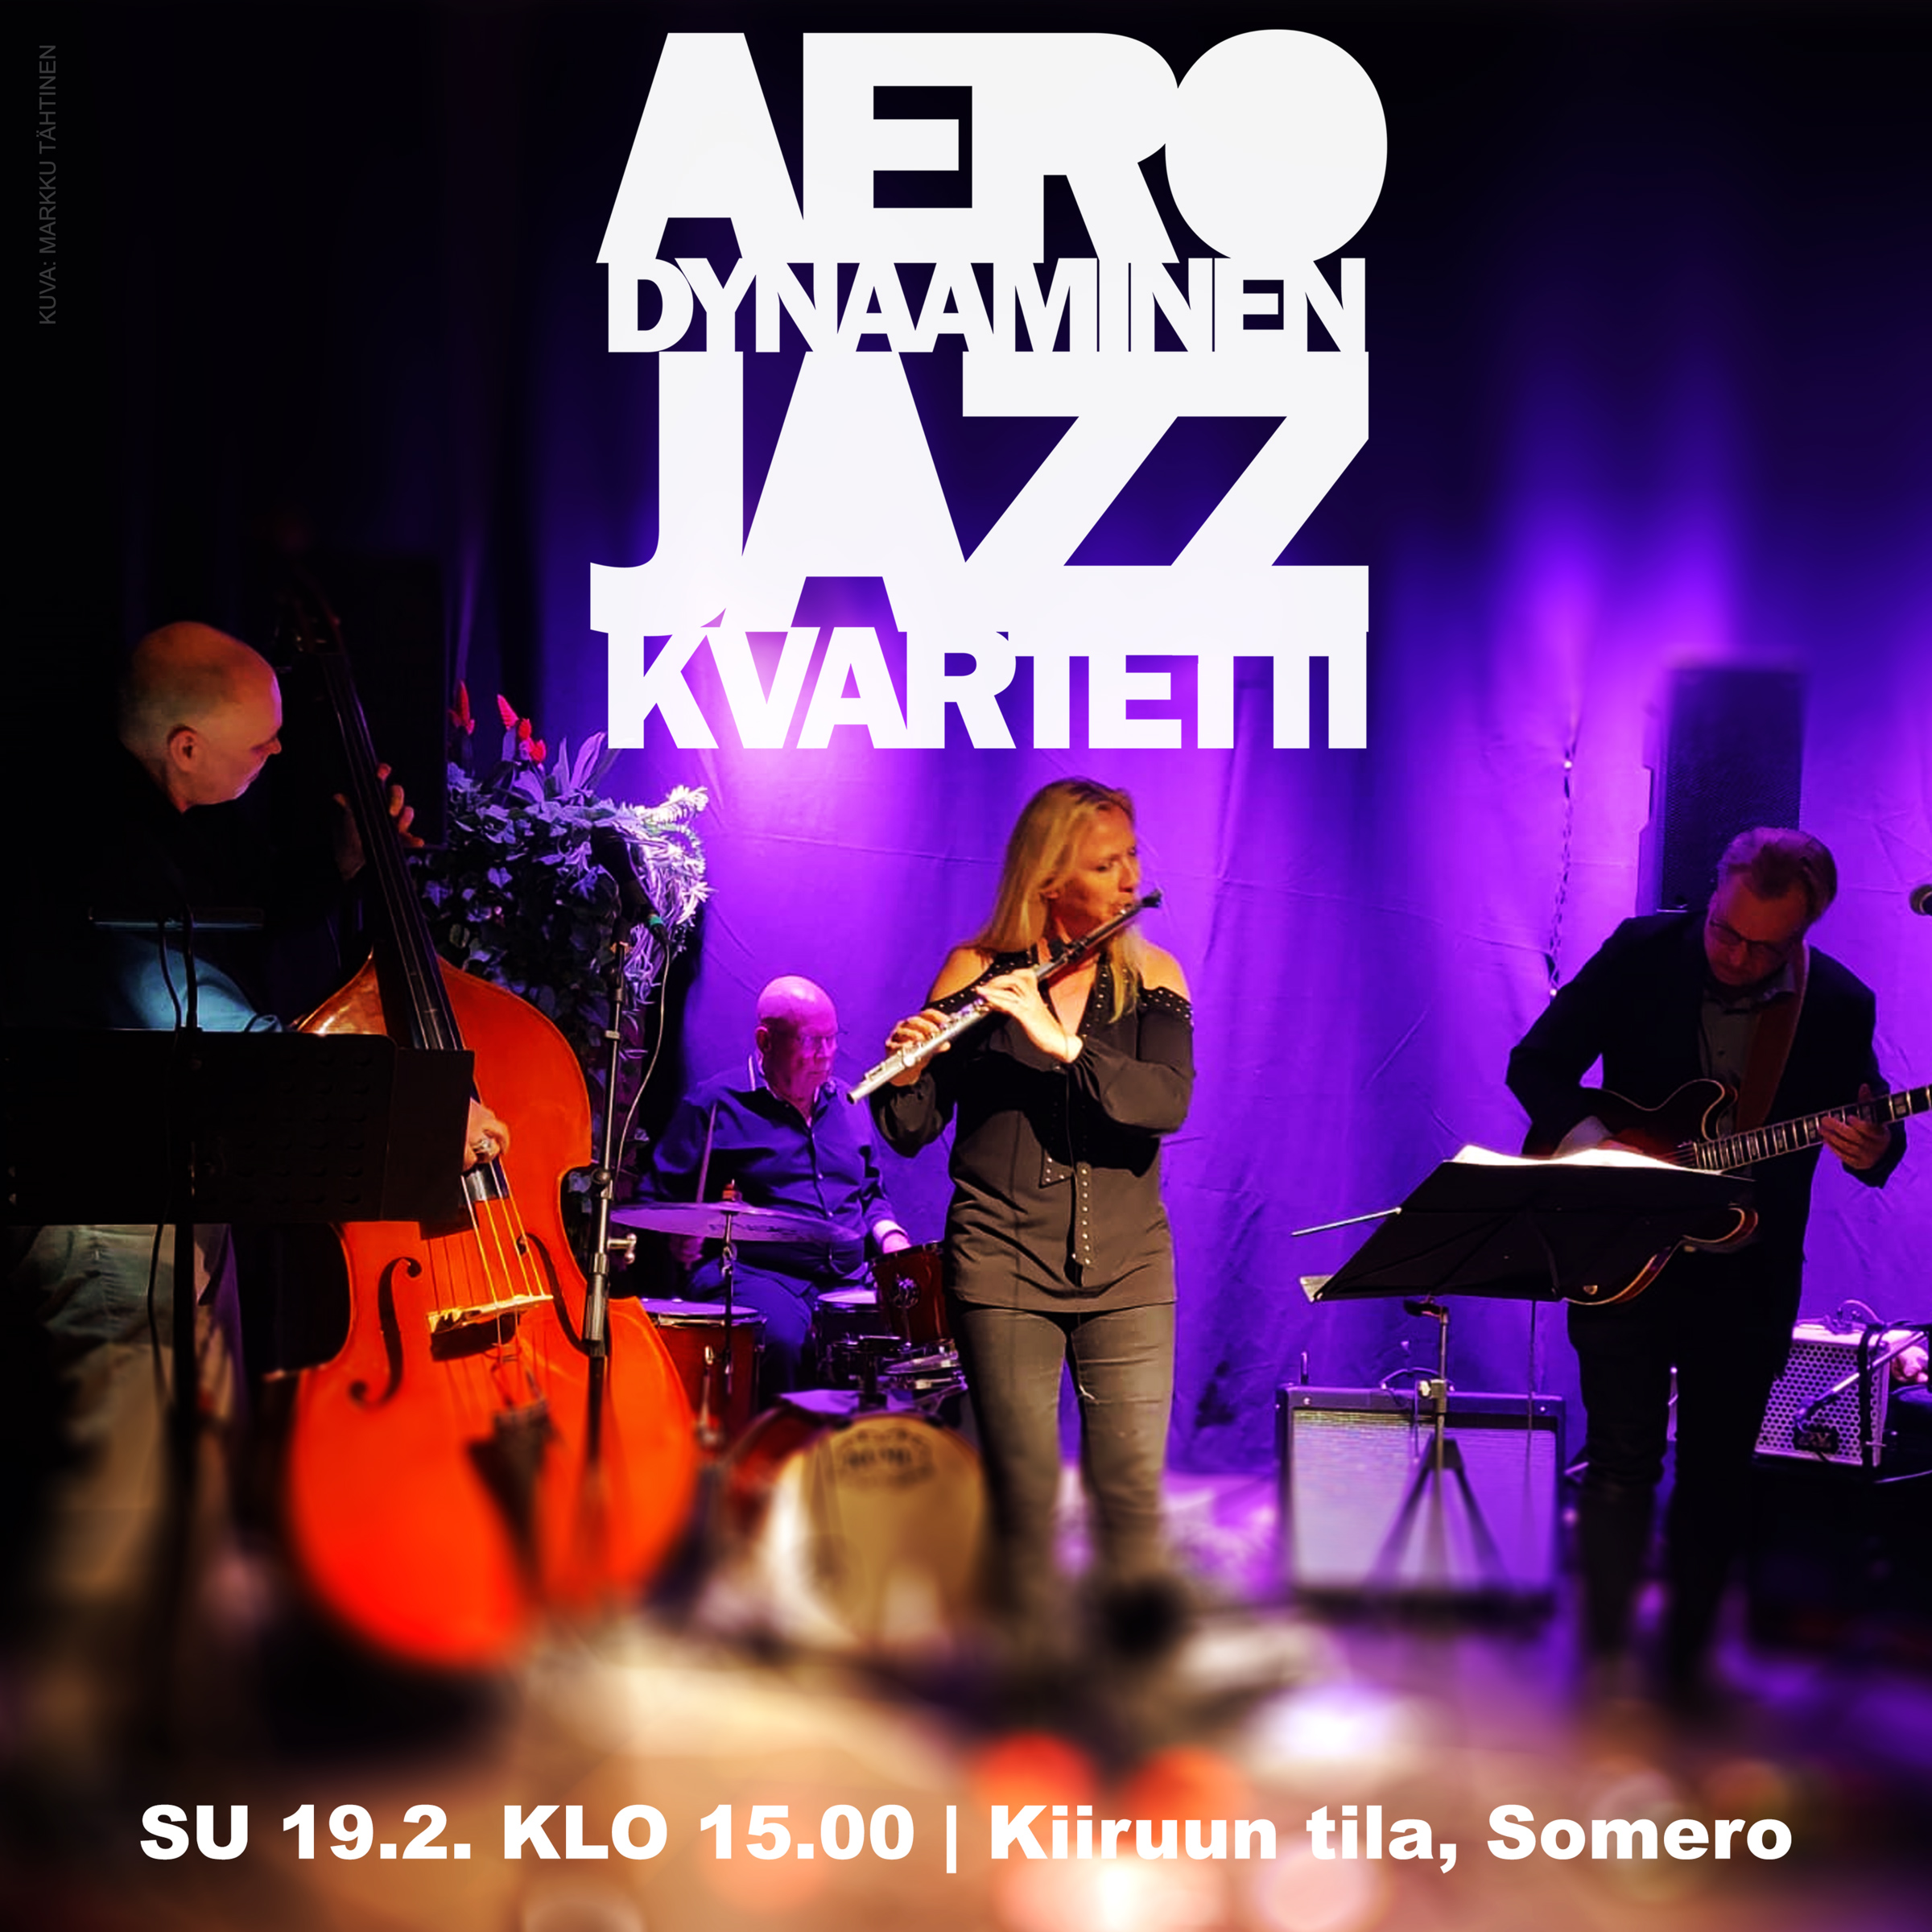 Varaa lippusi Aerodynaaminen Jazz Kvartetin konserttiin su 19.2. klo 15!